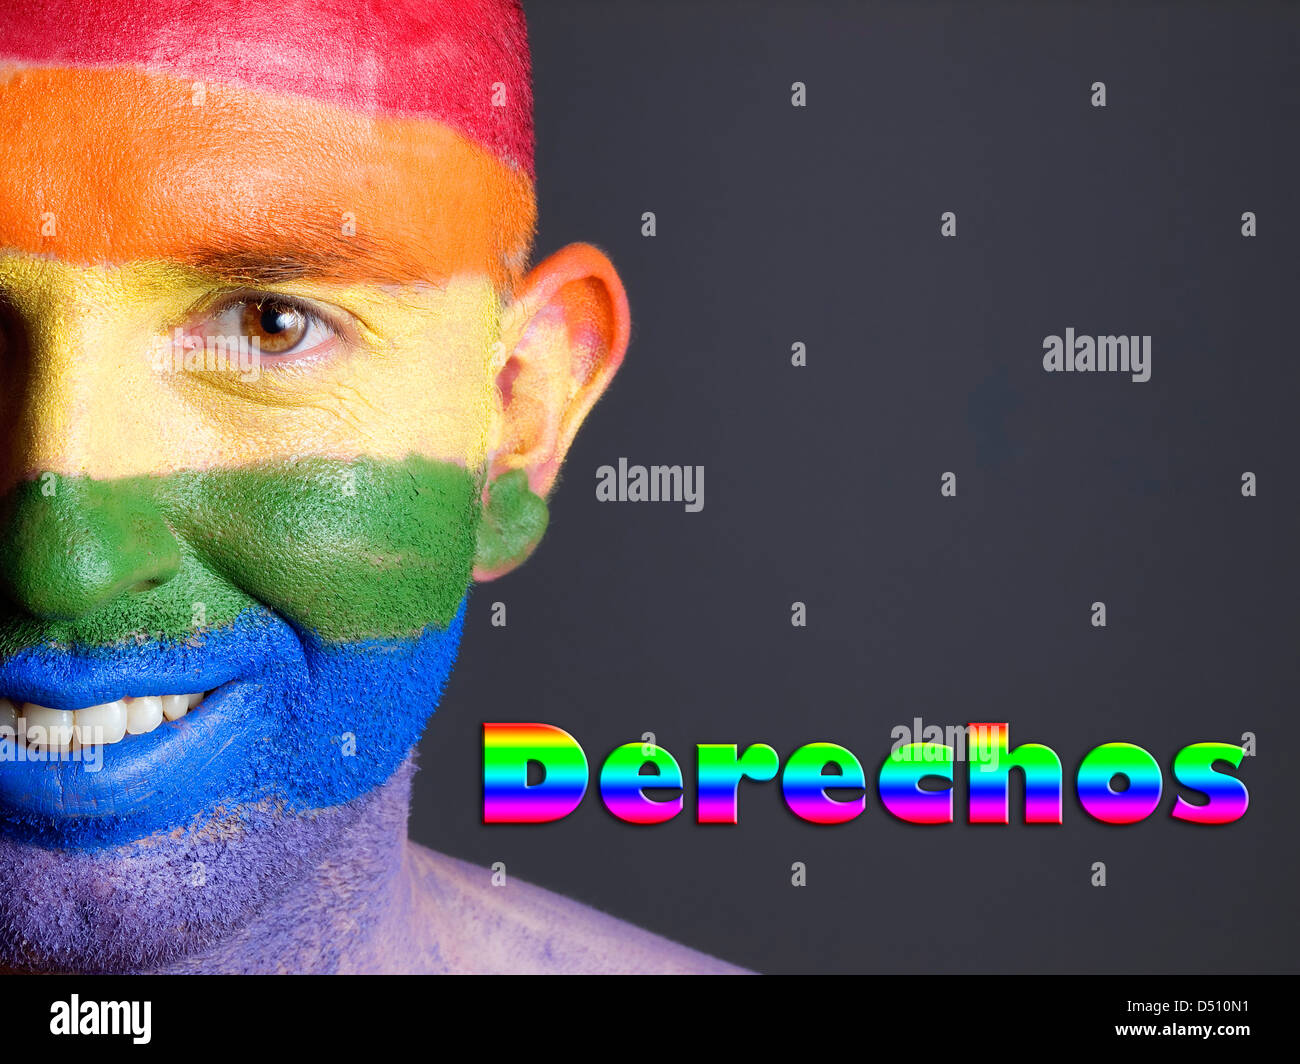 Hombre Con la Bandera Homosexuell Pintada de la Cara y Sonriendo. La Palabra "Derechos" Esta Escrita En un Lado. Stockfoto